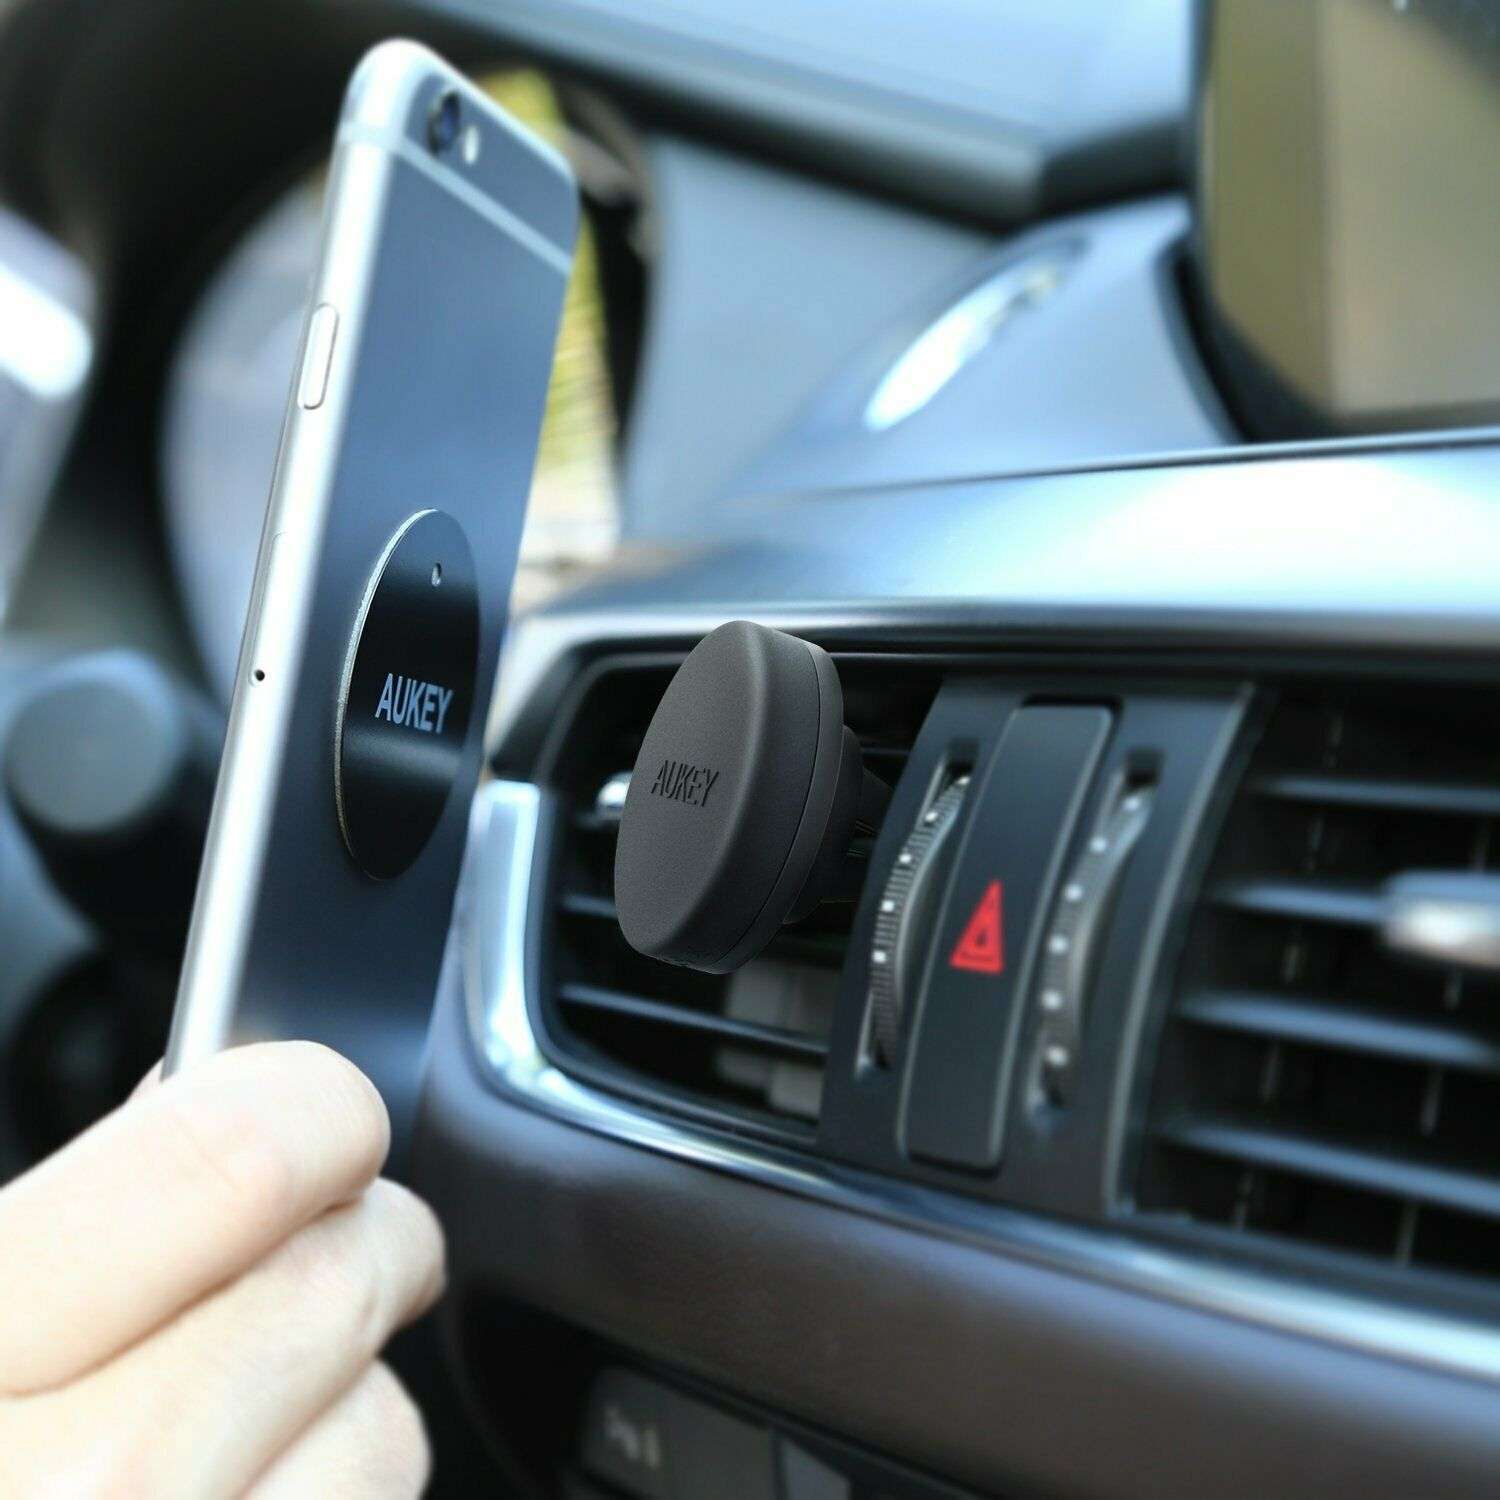 AUKEY Universal Magnet Handyhalterung Auto KFZ Lüftung iPhone